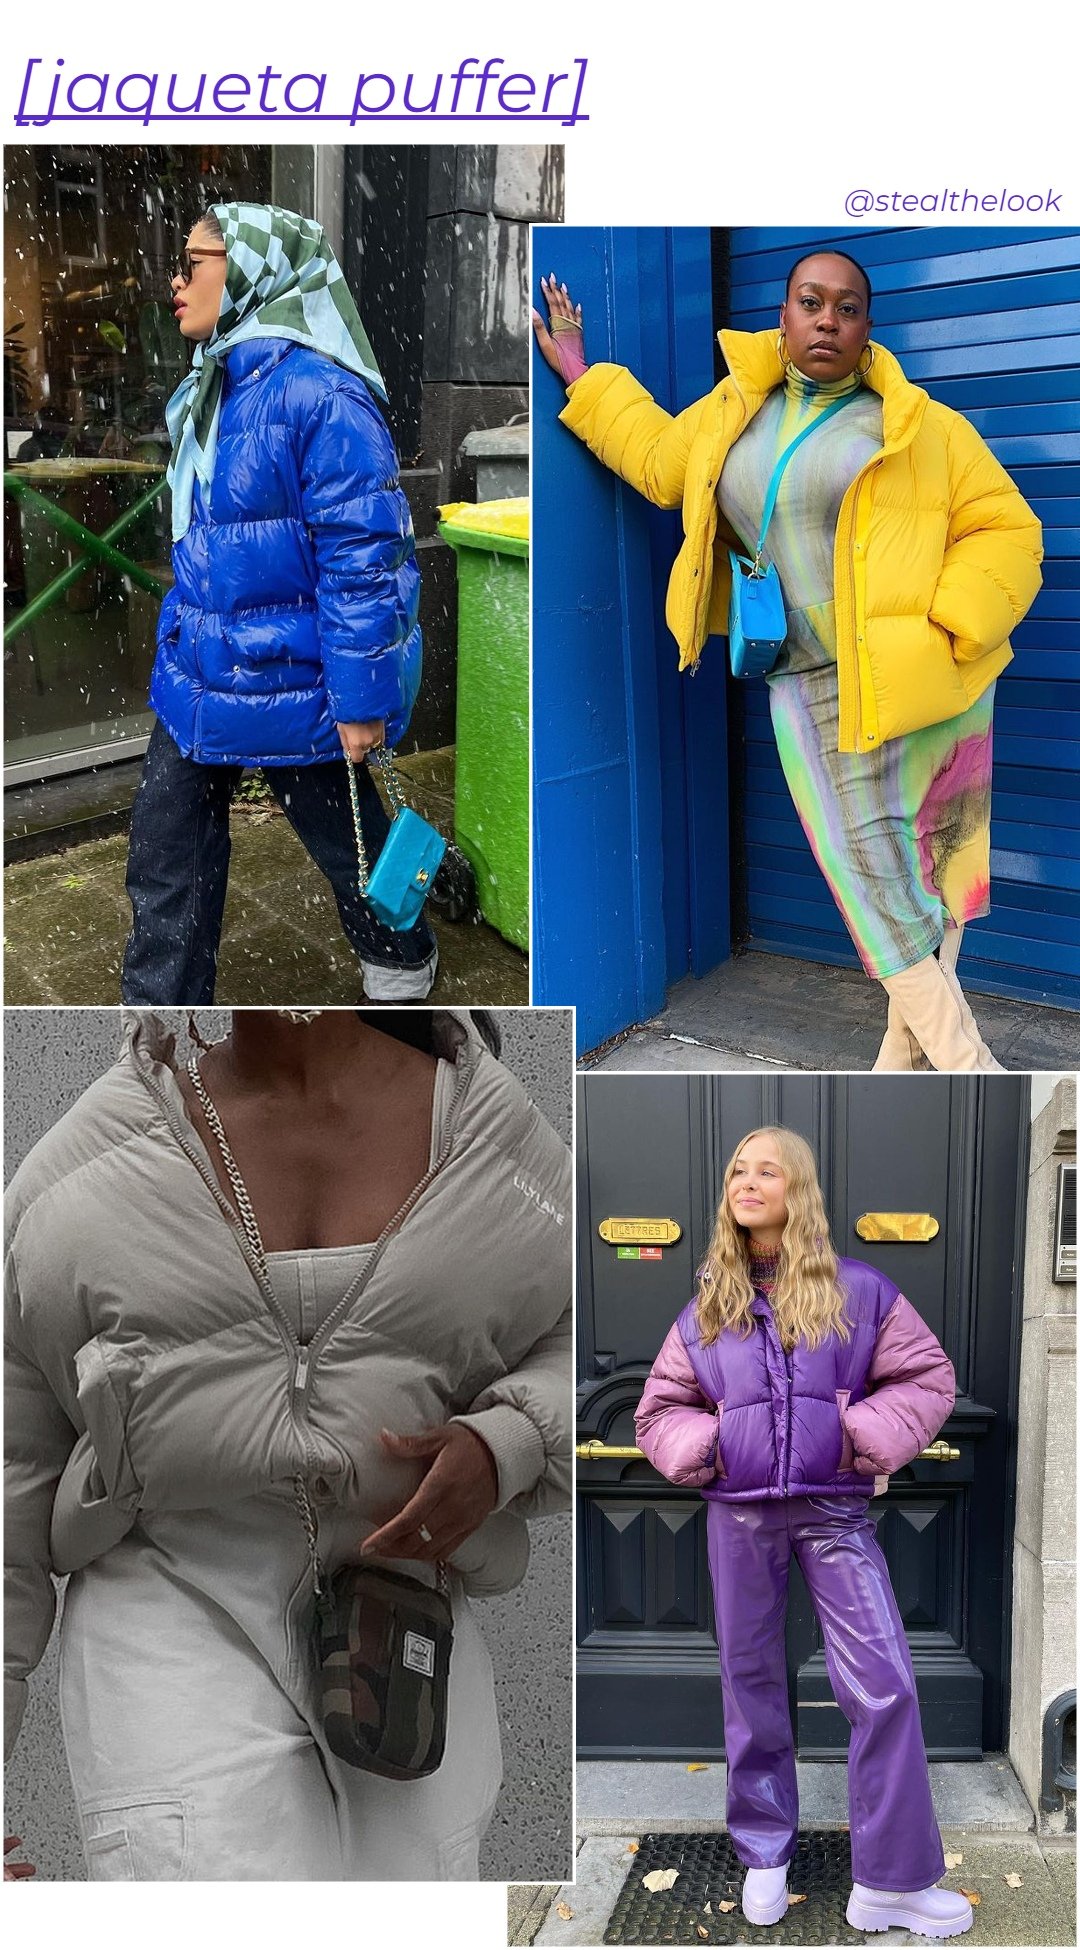 Aniyah Morinia - jaquetas puffer diversas - casacos de inverno - inverno - arte com 4 mulheres diferentes usando jaquetas puffer coloridas - https://stealthelook.com.br